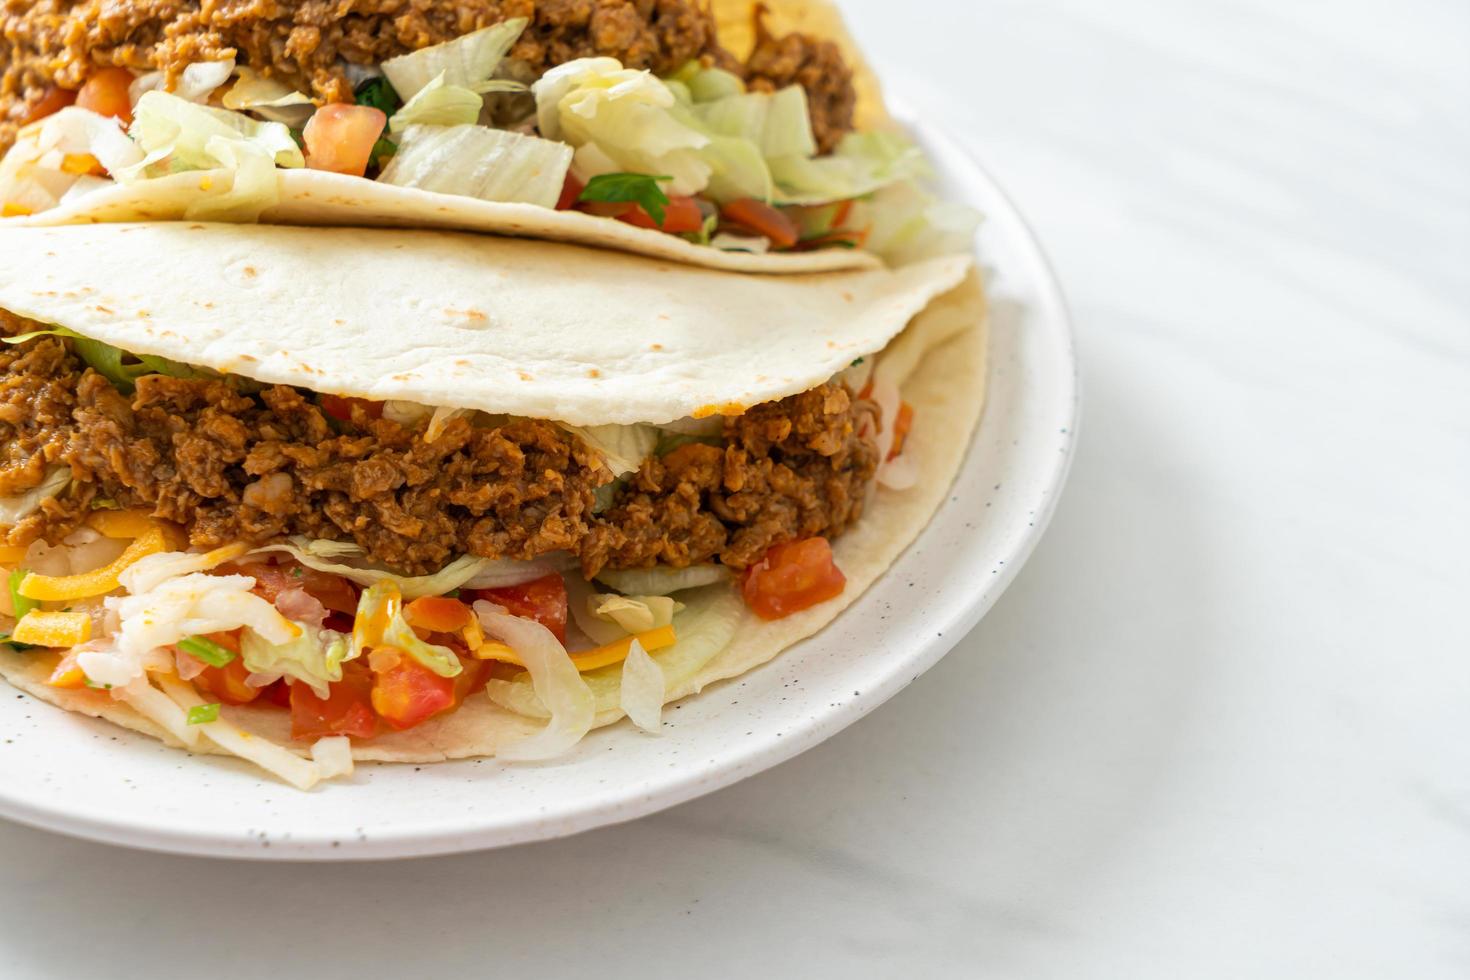 mexikanische Tacos mit gehacktem Hühnchen foto